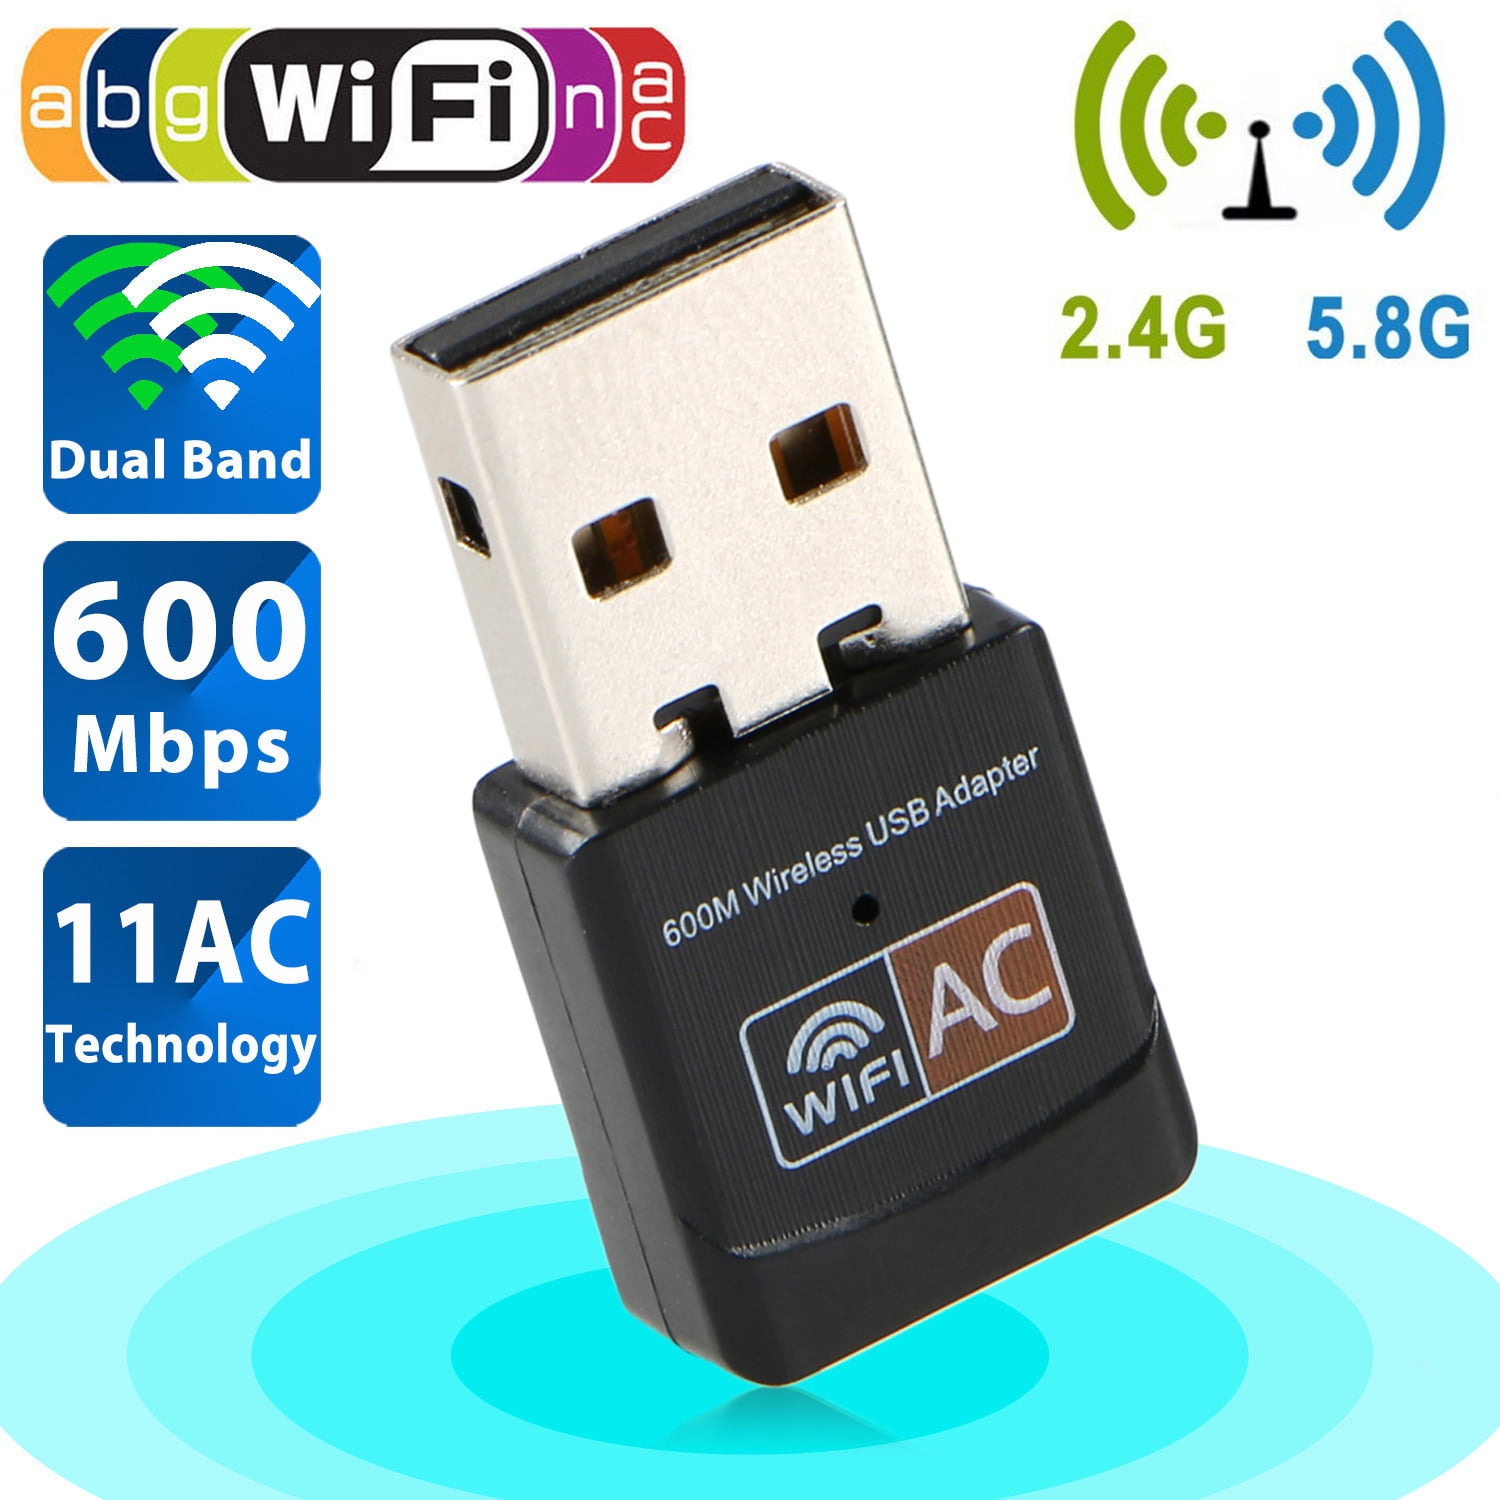 2 x USB WiFi Wireless Adapter Mini Network 300Mbps Windows MAC Linux 802.11n 